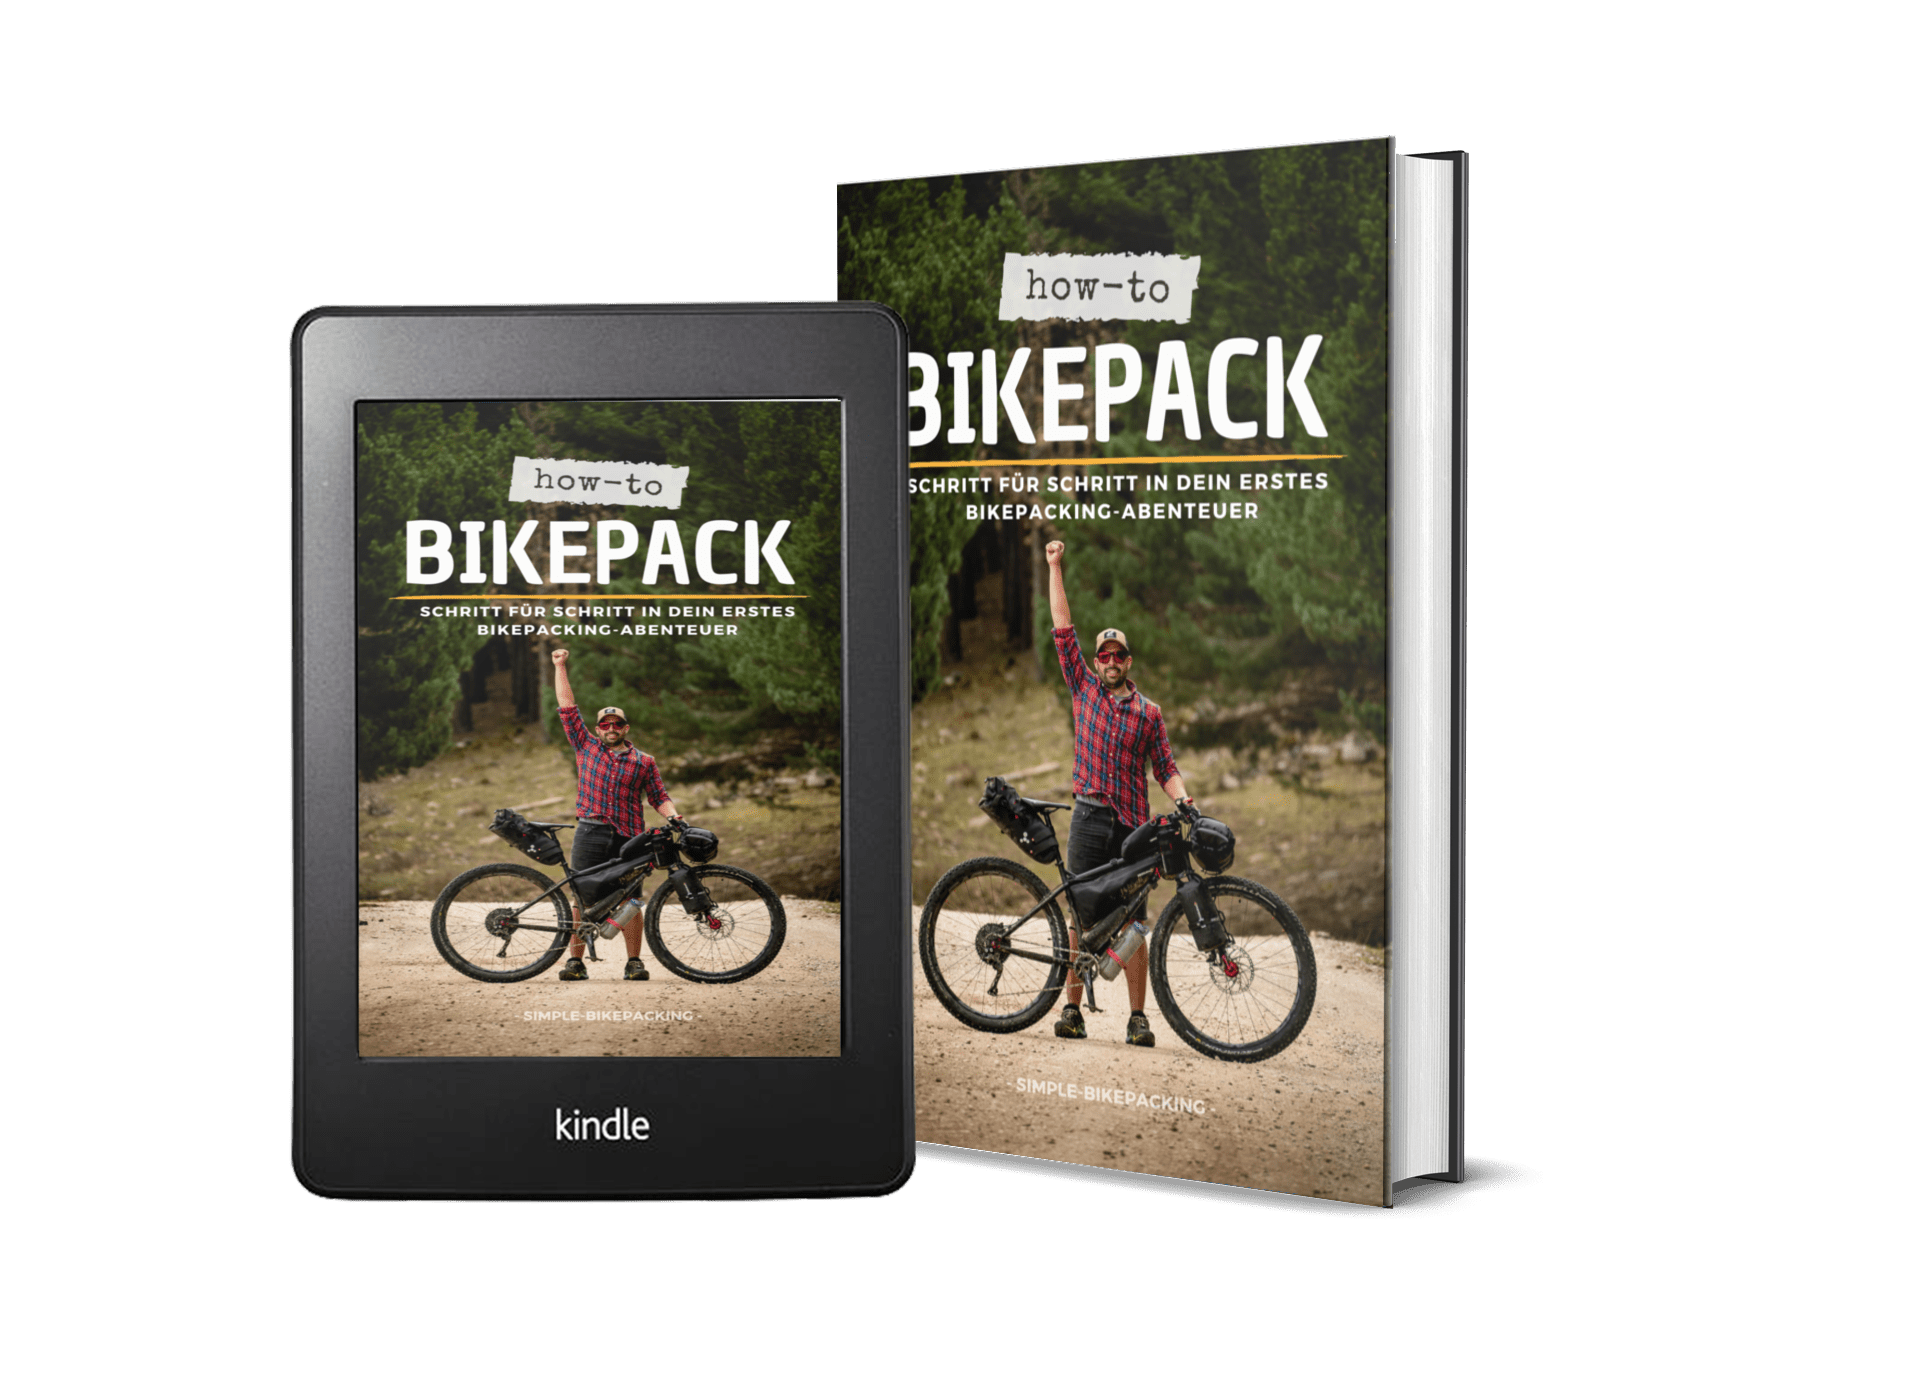 How to Bikepack